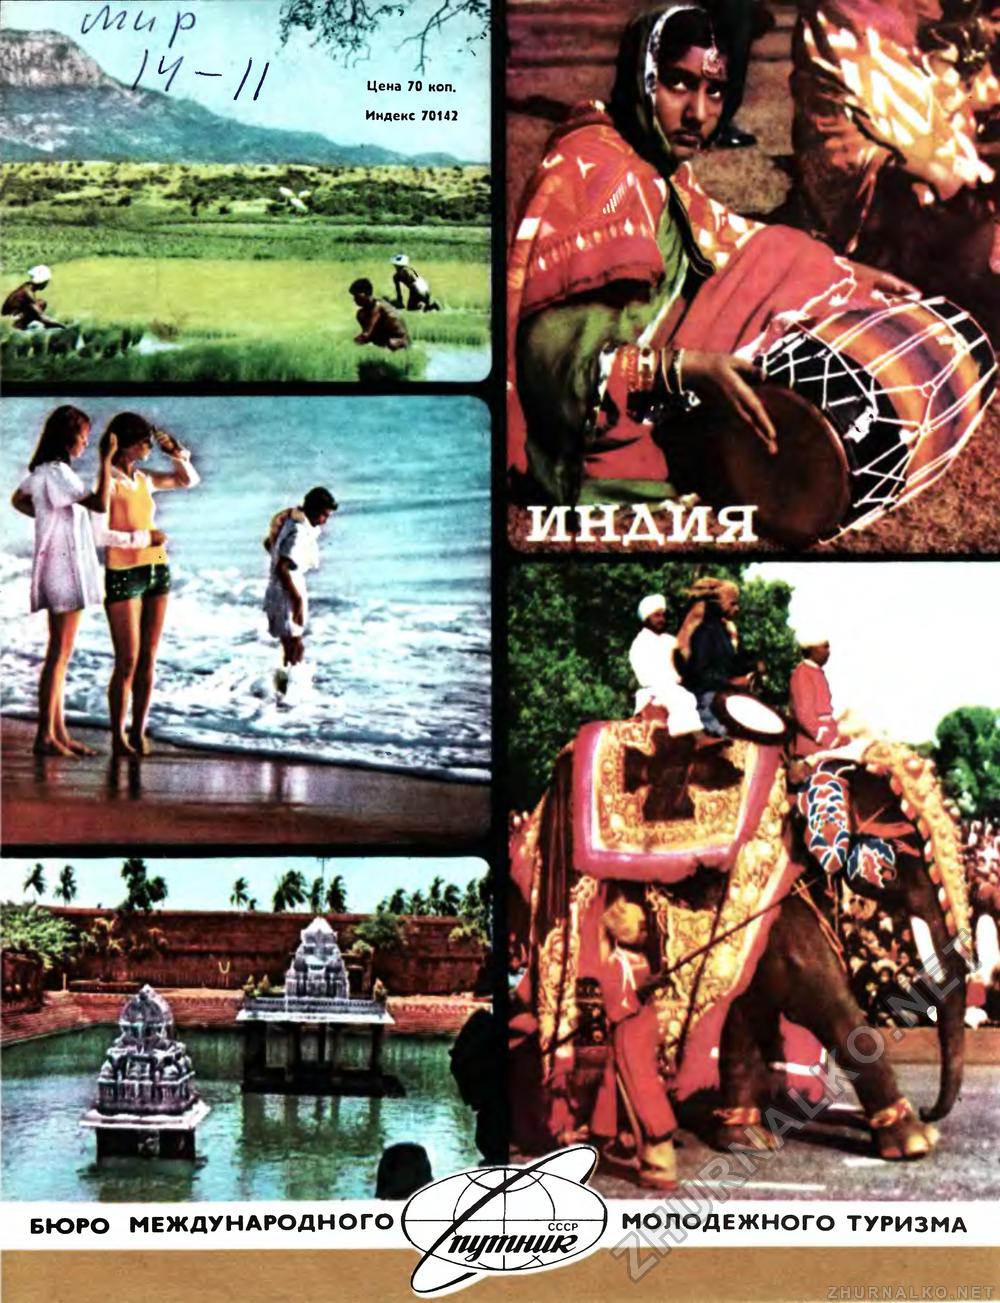   1977-09,  84